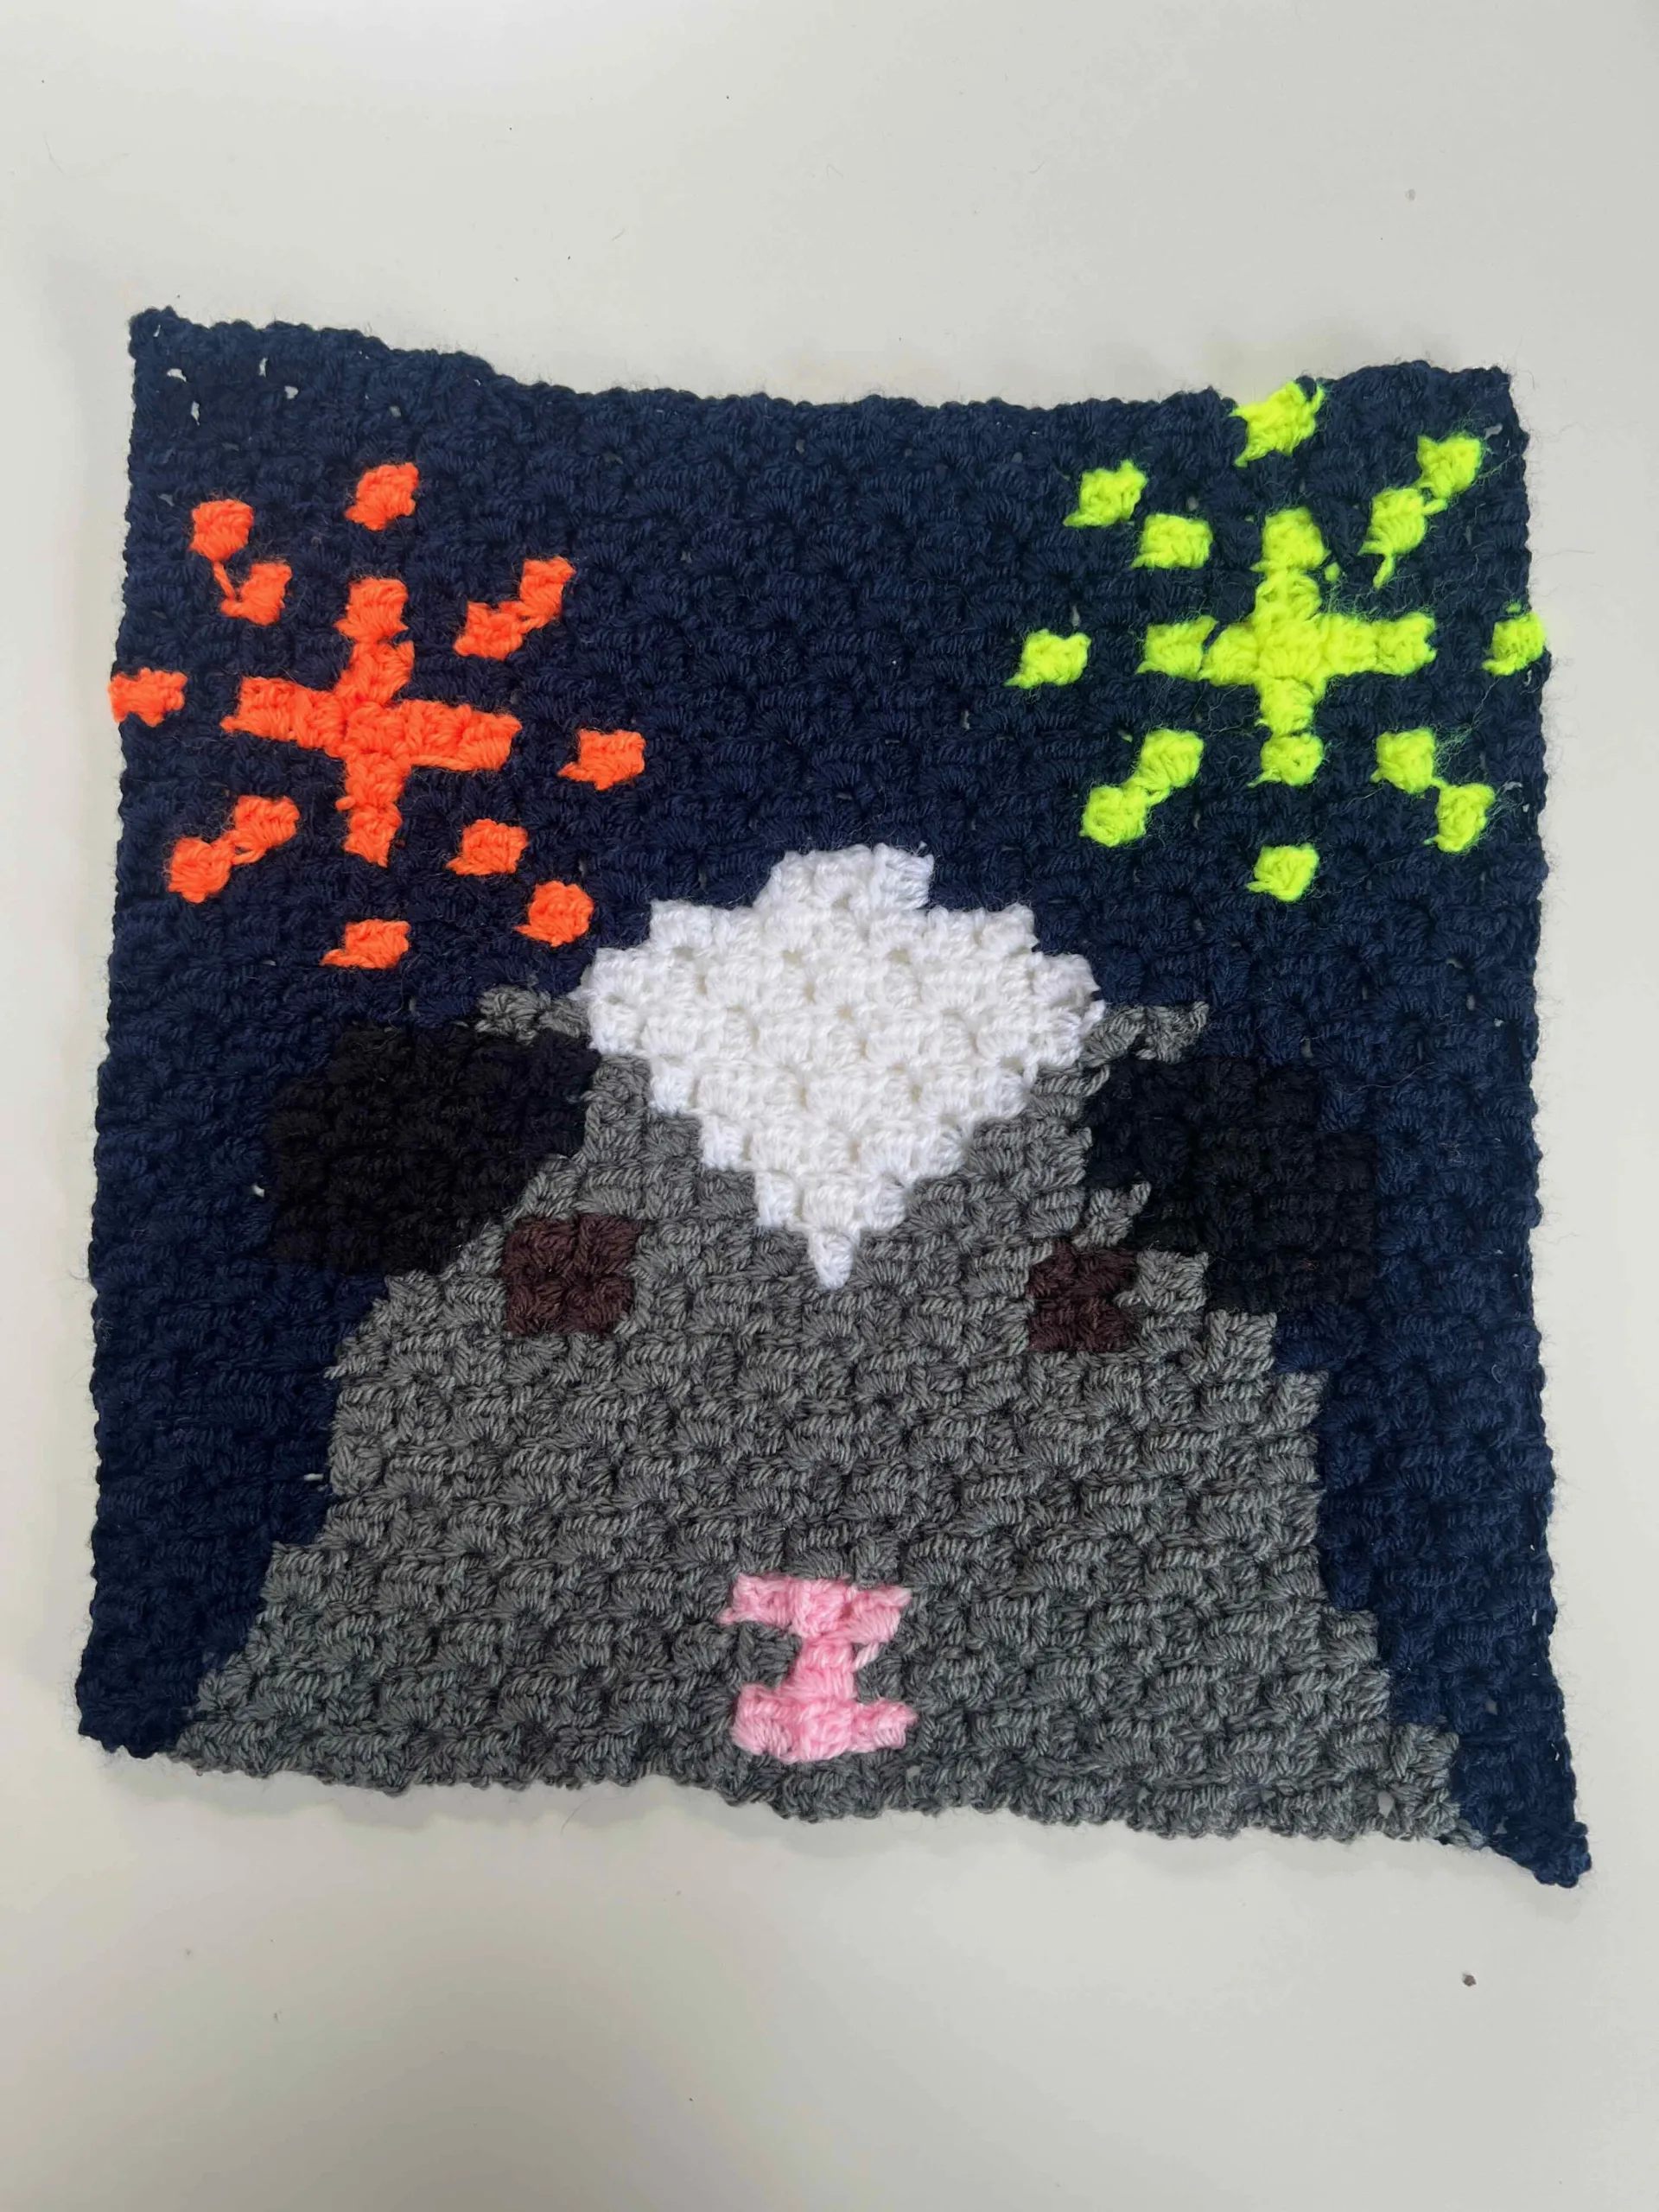 Crochet guinea pig blanket